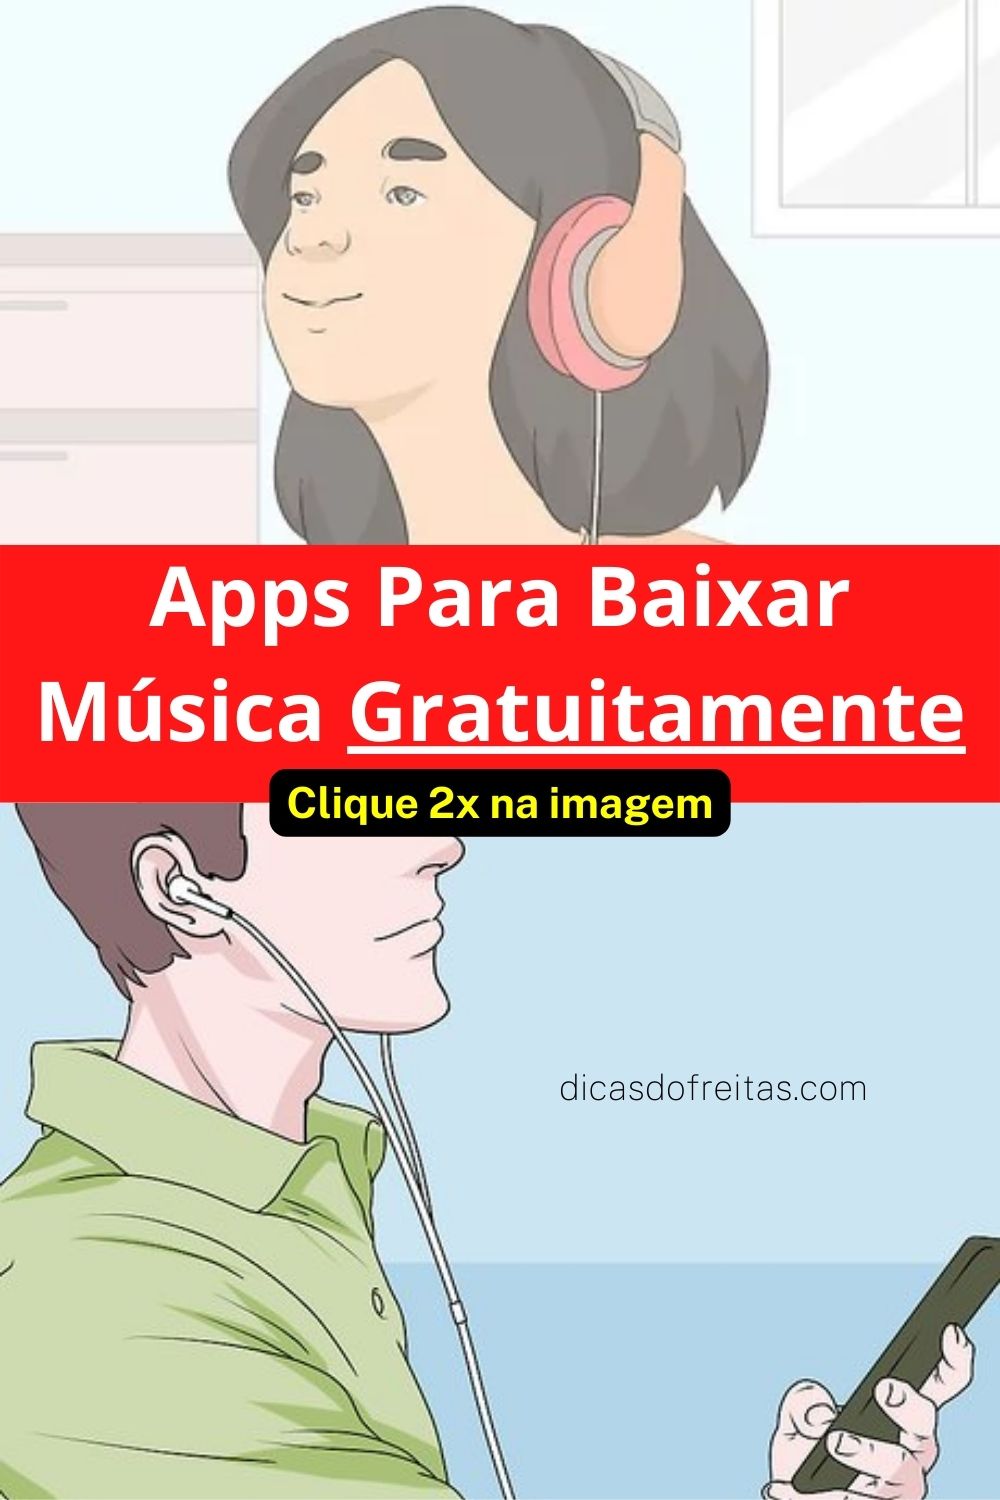 Apps para baixar música gratuitamente; Top 6 apps para baixar música gratuitamente